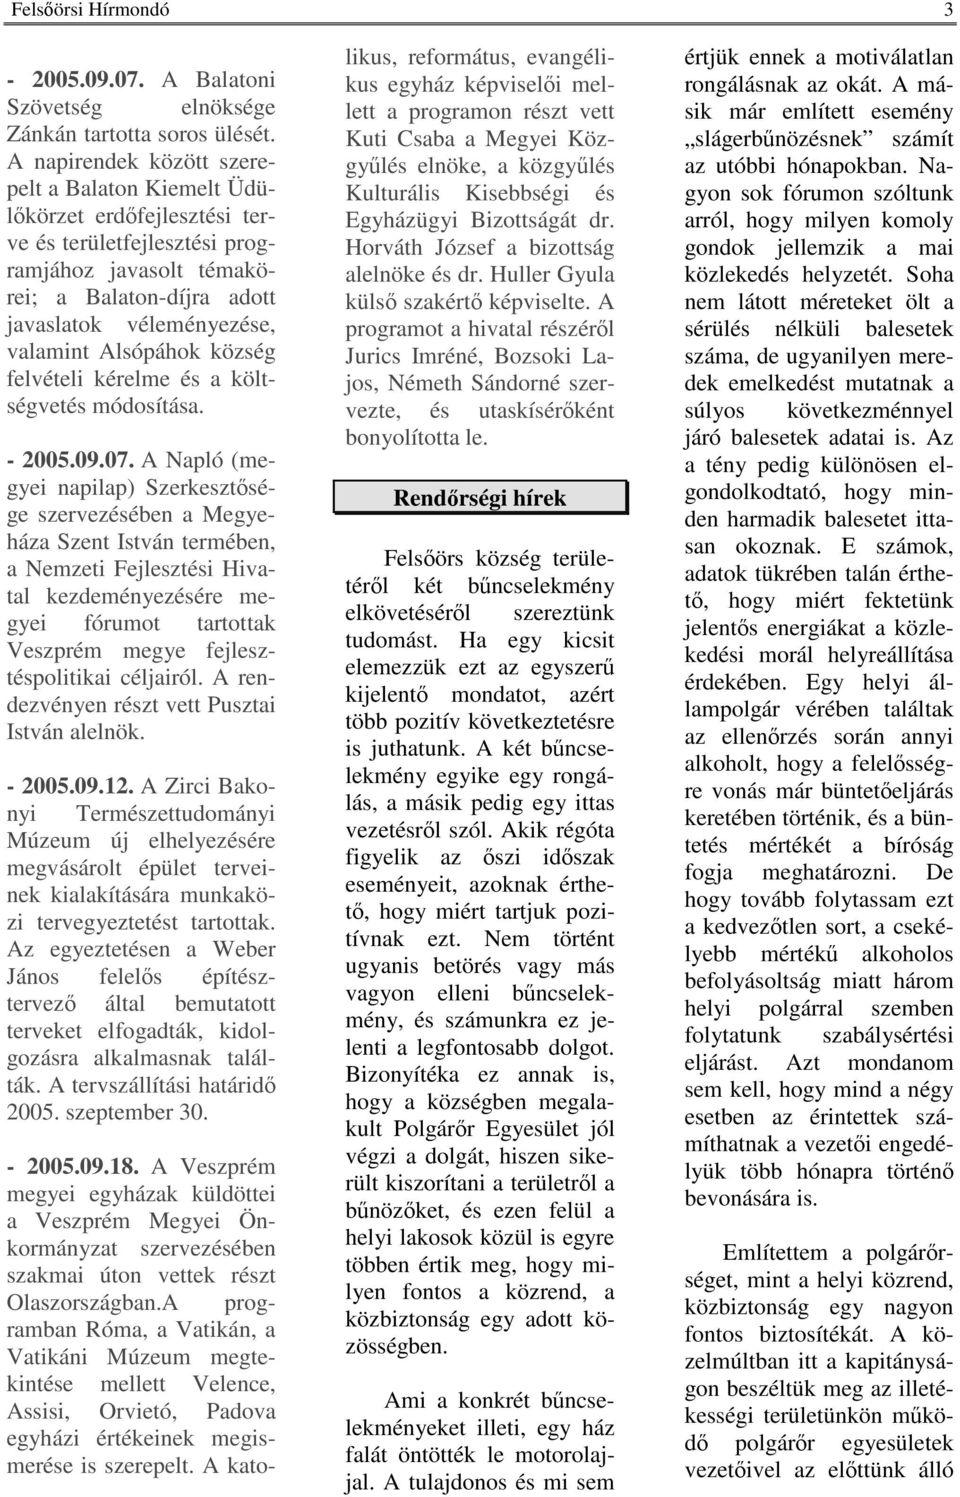 Alsópáhok község felvételi kérelme és a költségvetés módosítása. - 2005.09.07.